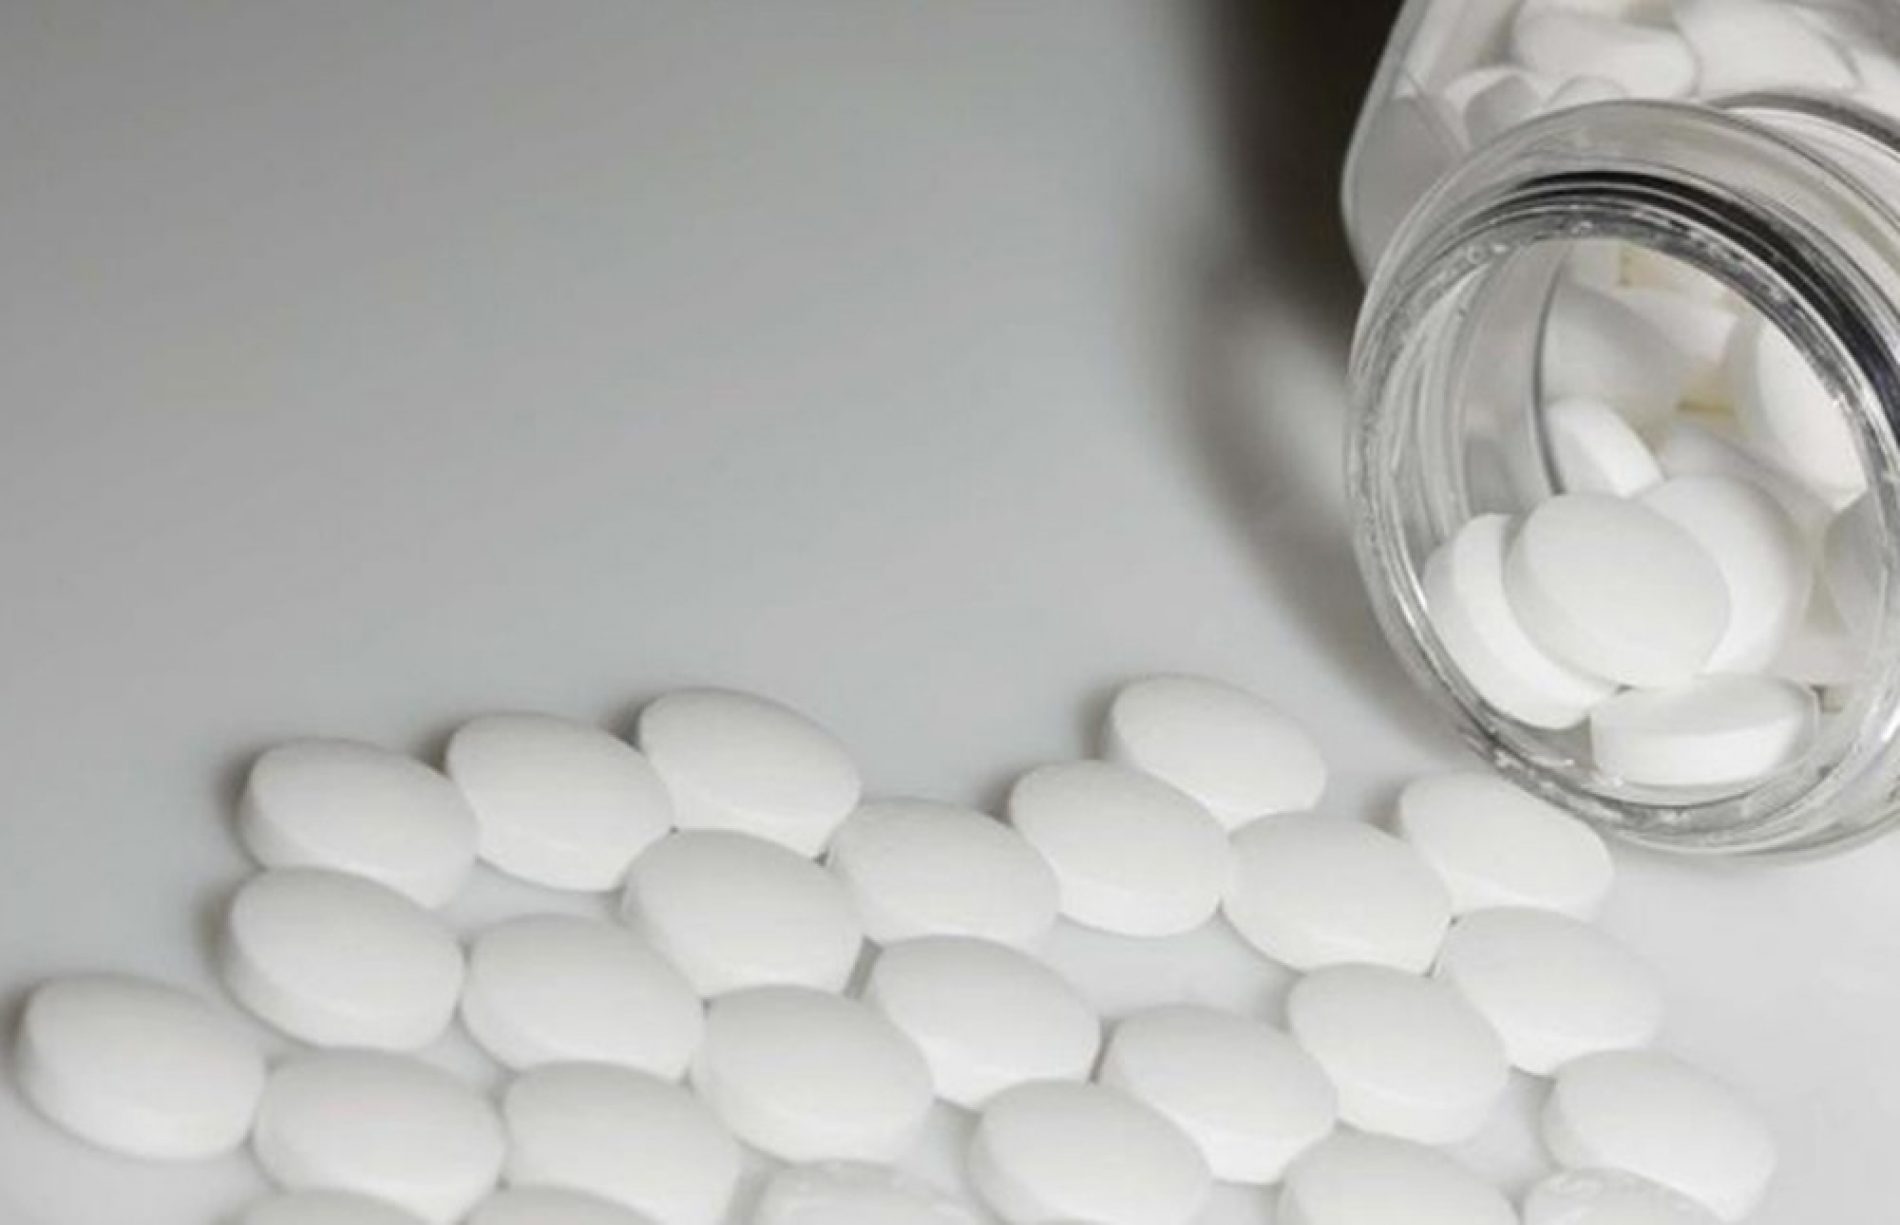 SAÚDE:  Estudo mostra que tomar aspirina todo dia tem risco para pessoas mais velhas